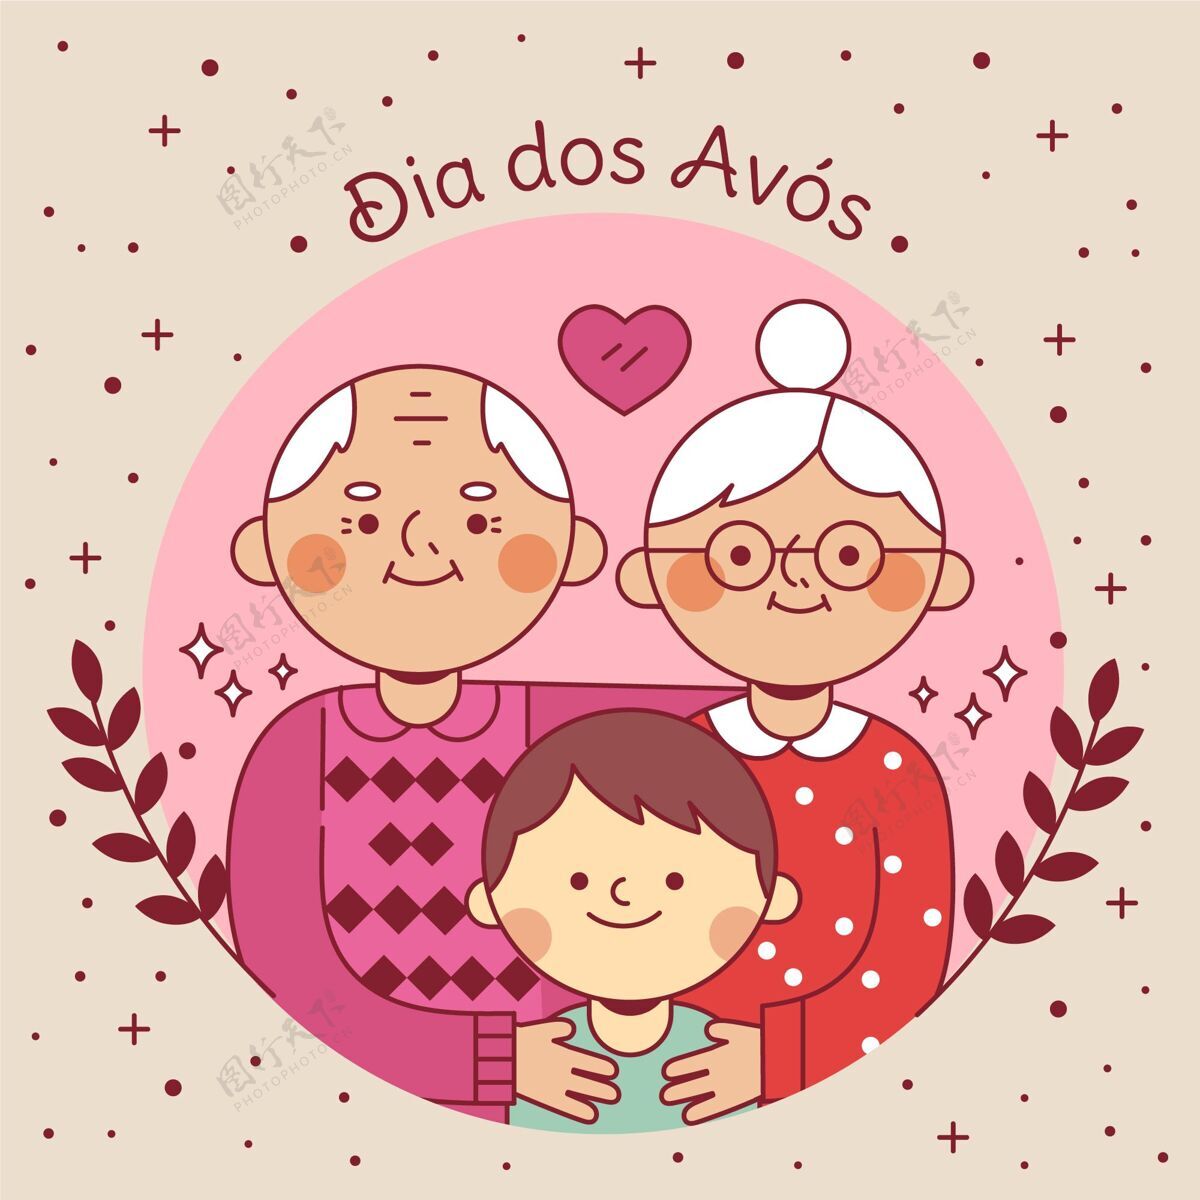 迪亚德洛斯阿布埃洛斯平面直径dosavos插图祖母庆祝活动迪亚多斯阿沃斯